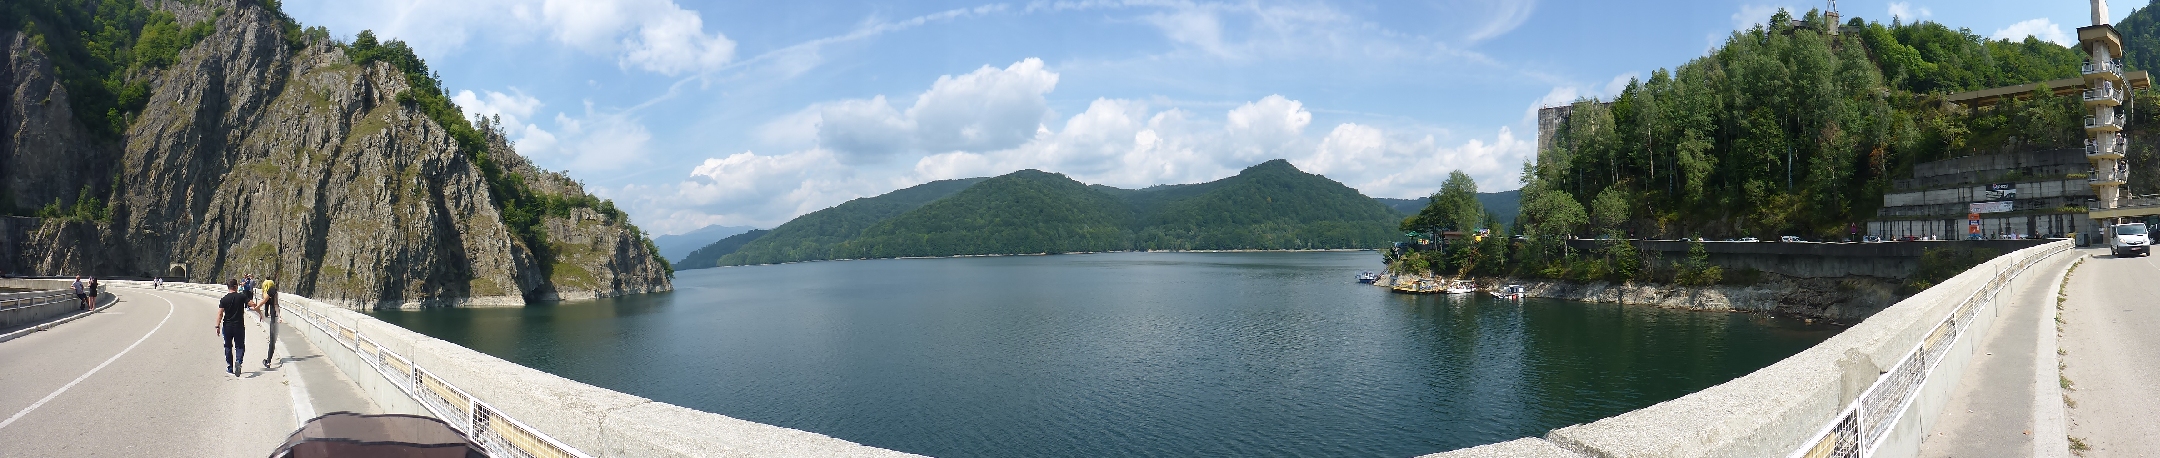 Lacul Vidraru und Damm